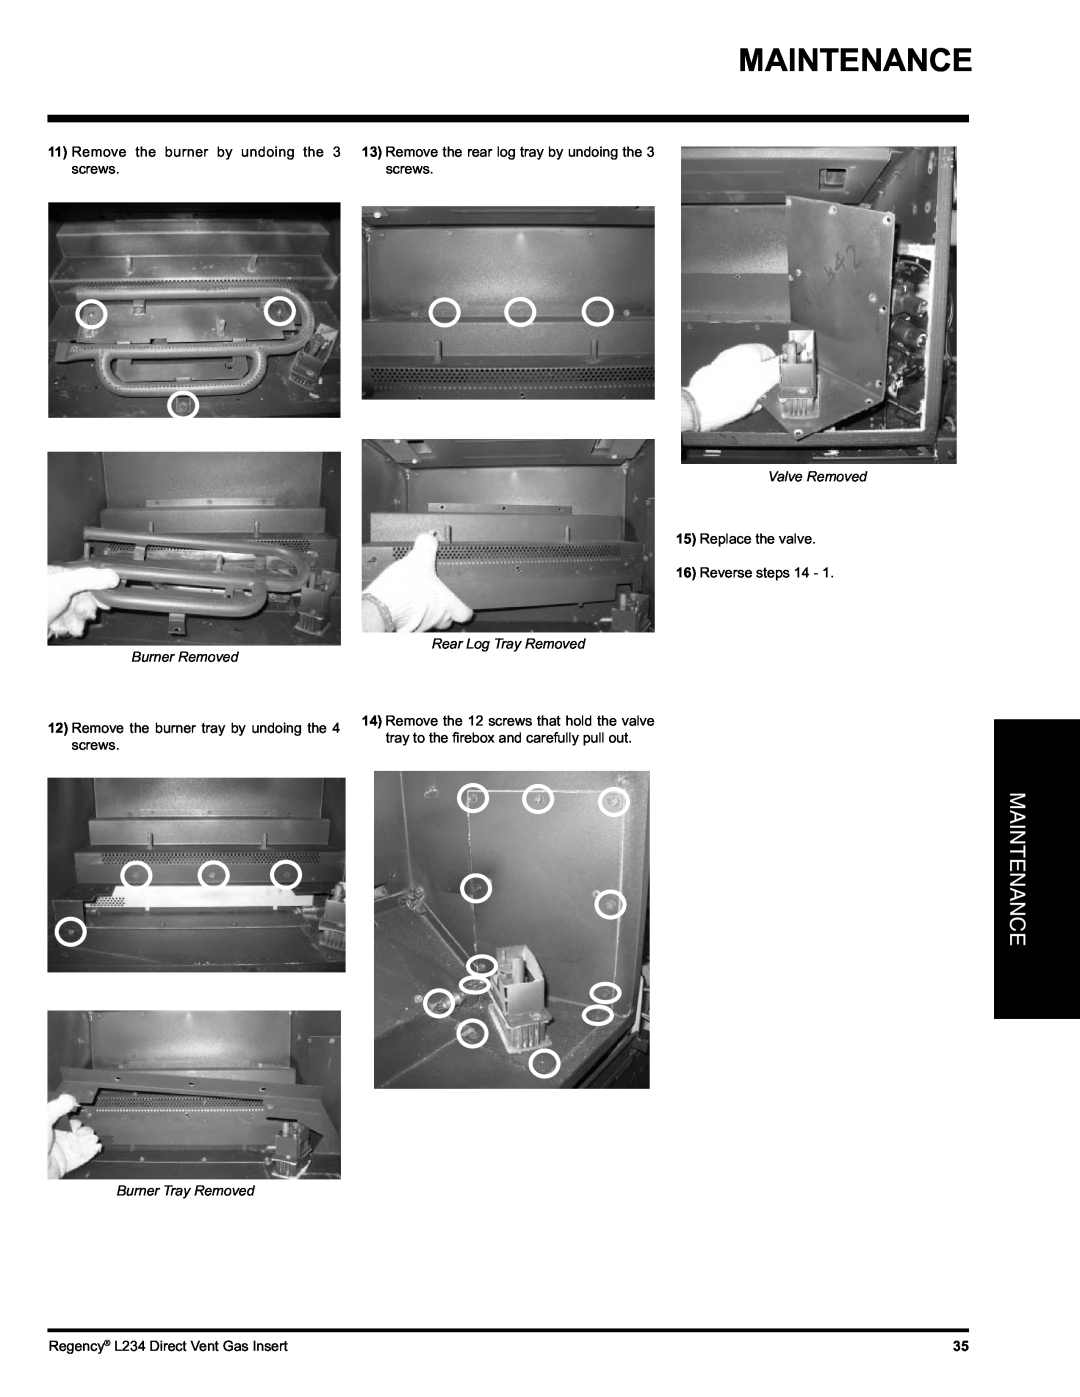 Regency L234-NG, L234-LP Maintenance, Valve Removed, Rear Log Tray Removed Burner Removed, Burner Tray Removed 